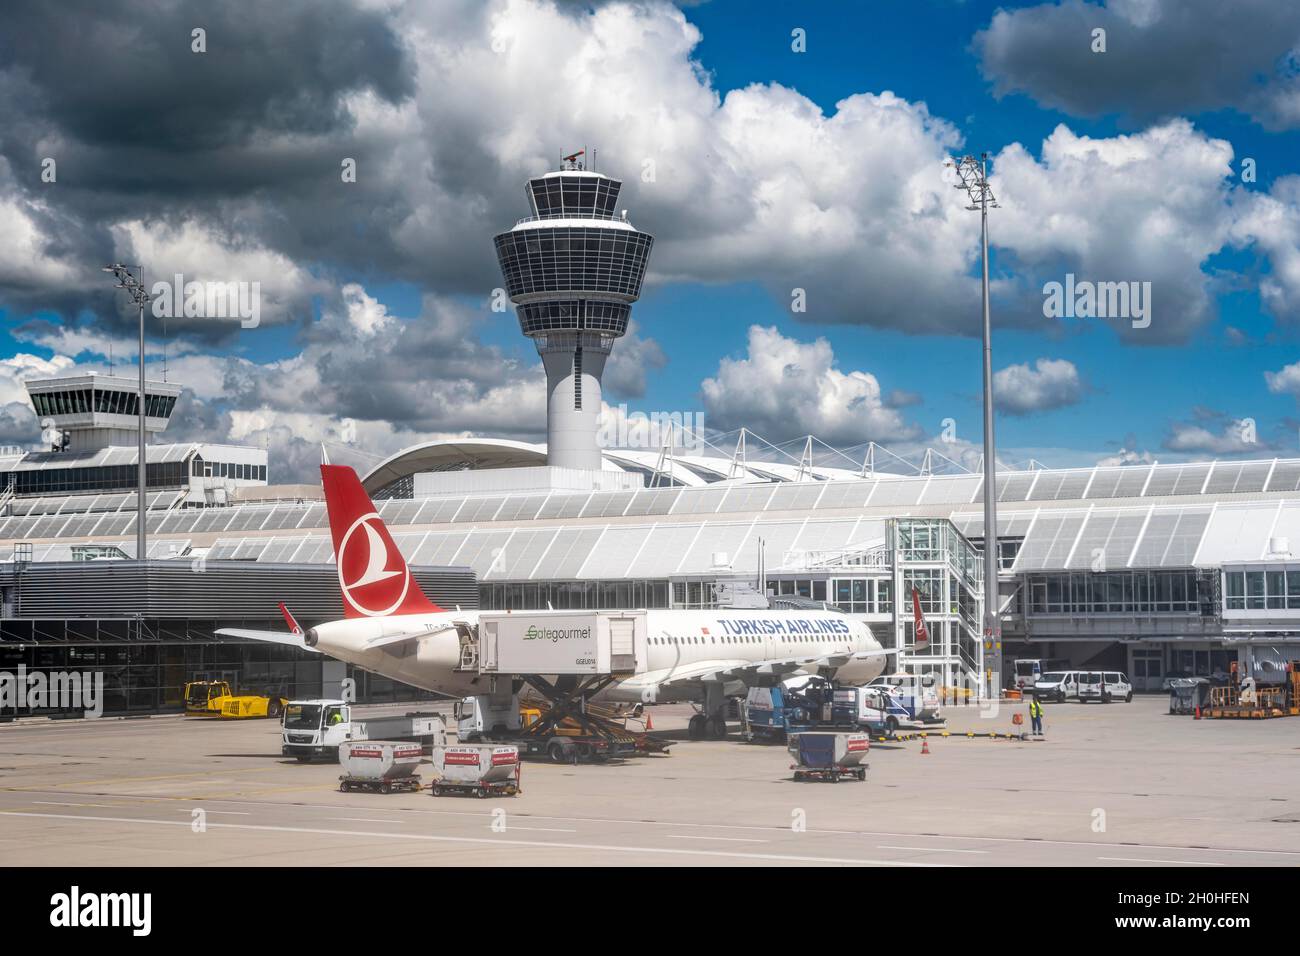 Turkish Airline, Flugzeug an einem Gate, Flughafen München mit Turm, München, Deutschland Stockfoto